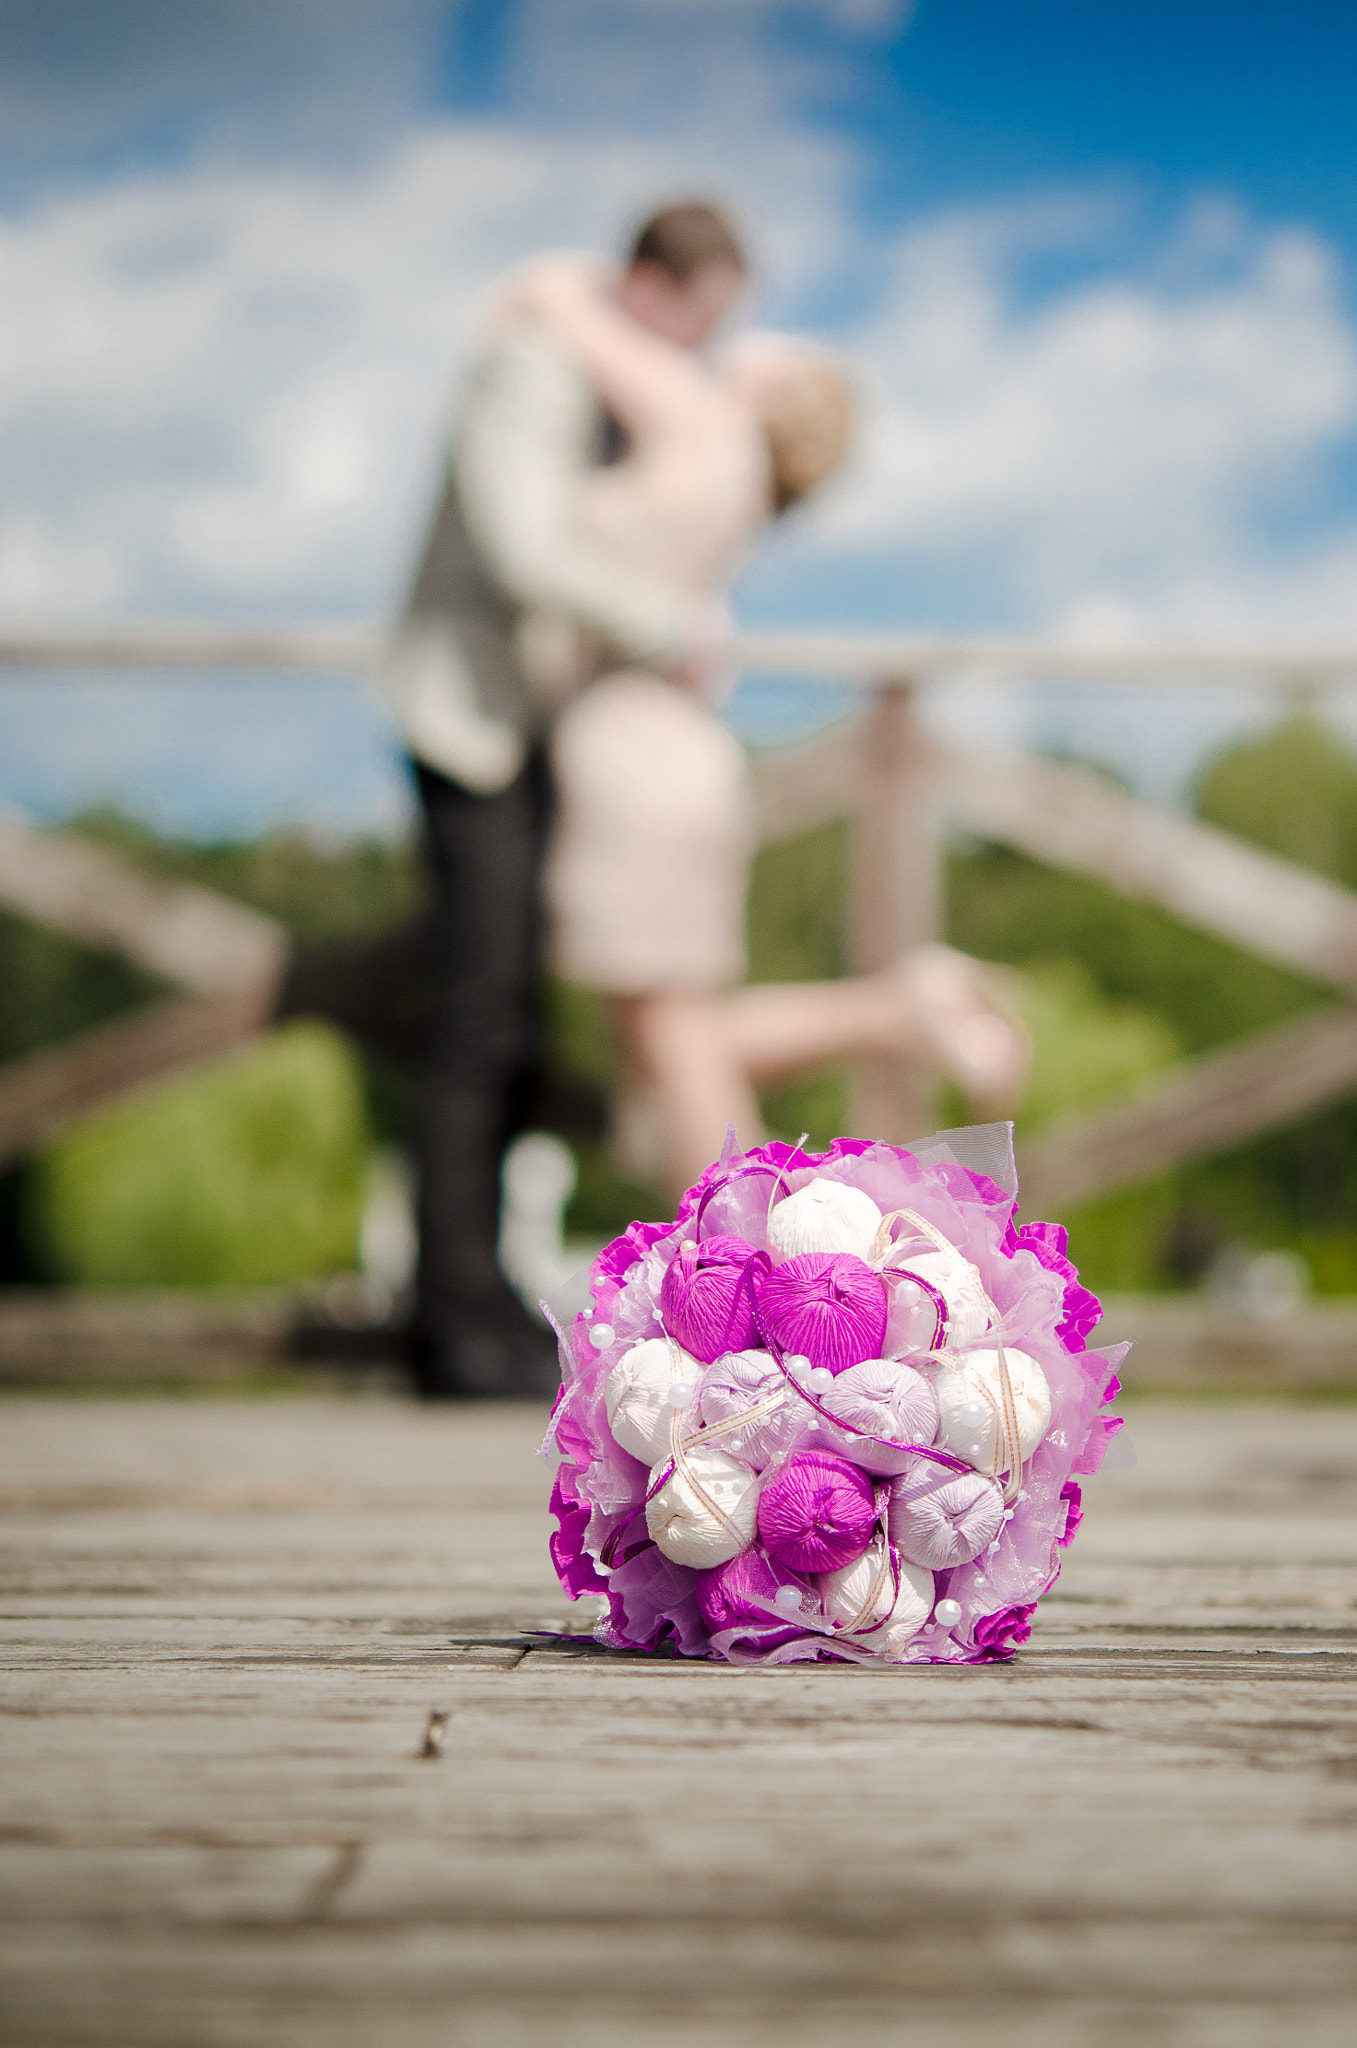 Nikon D5100 sample photo. Bridal bouquet photography